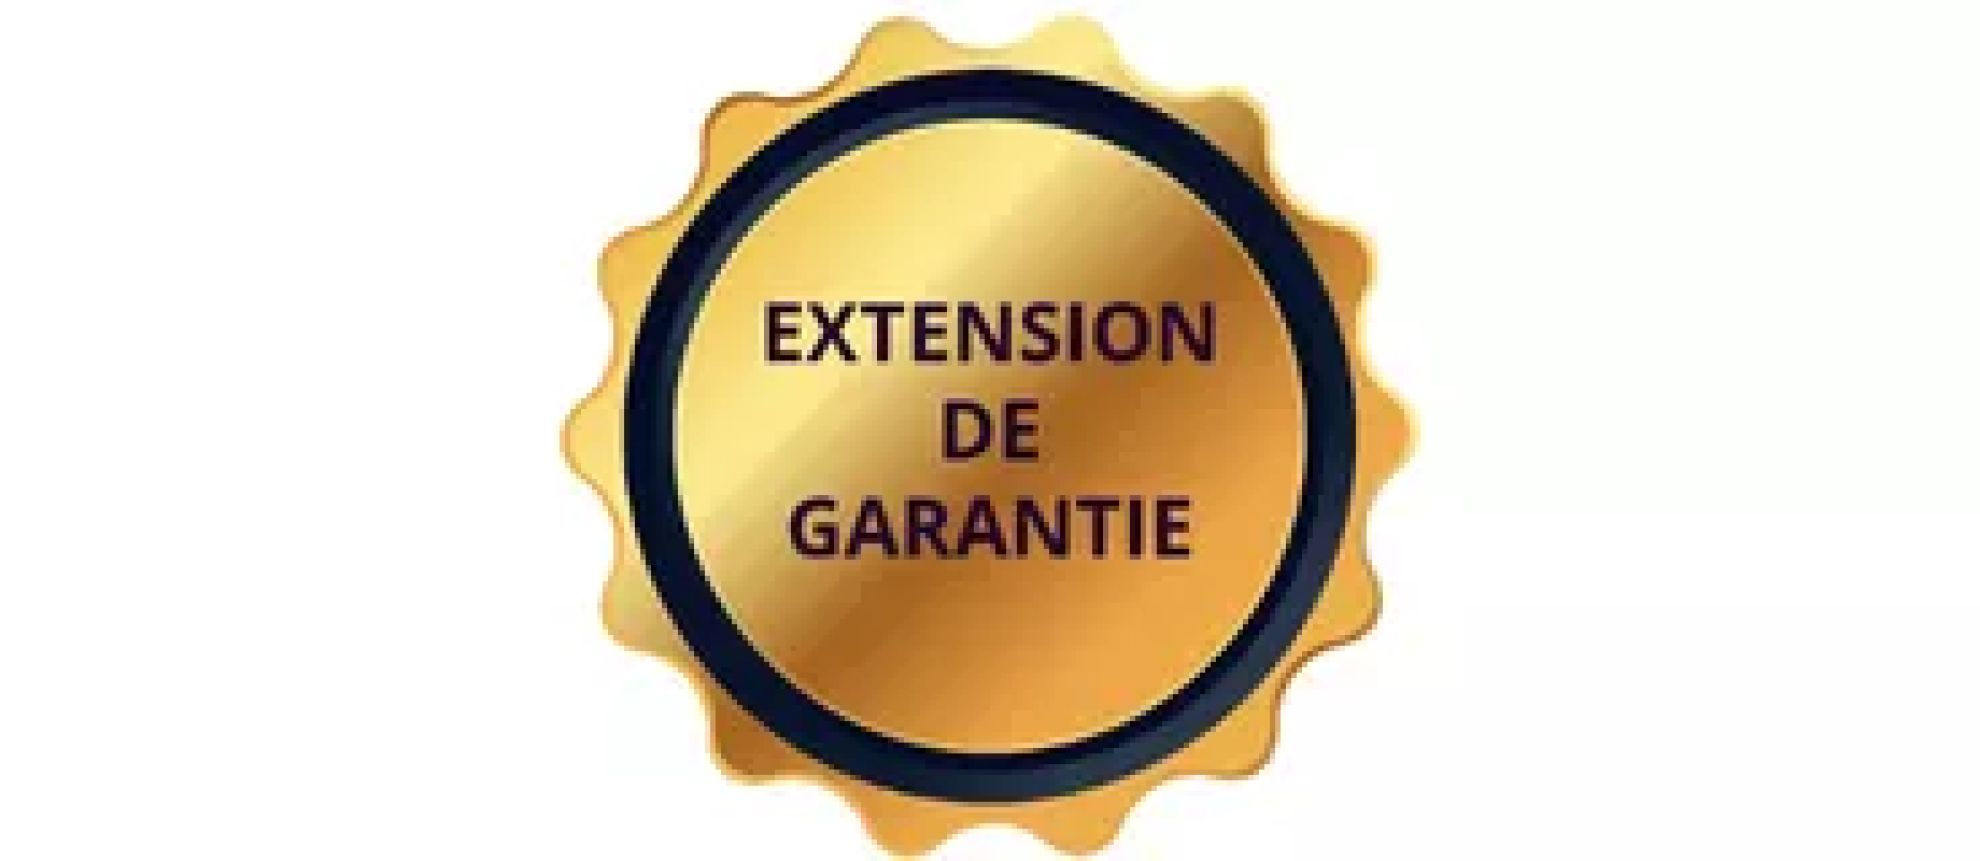 Extensions de garantie - hello RSE